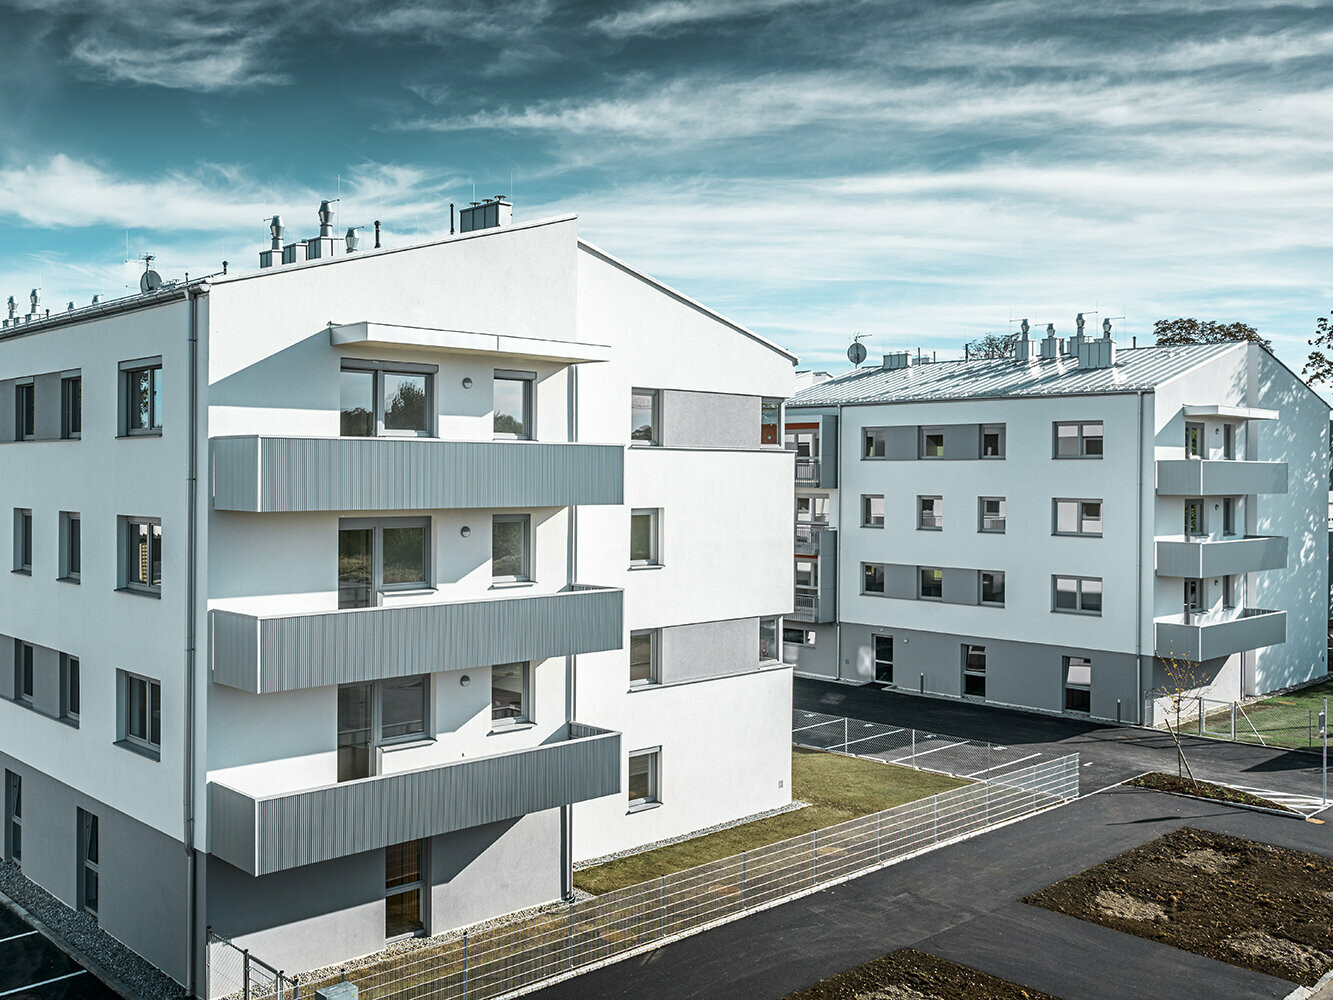 Moderne boligkompleks med hvit fasade og balkonger med PREFA sikksakkprofil i sølvmetallic